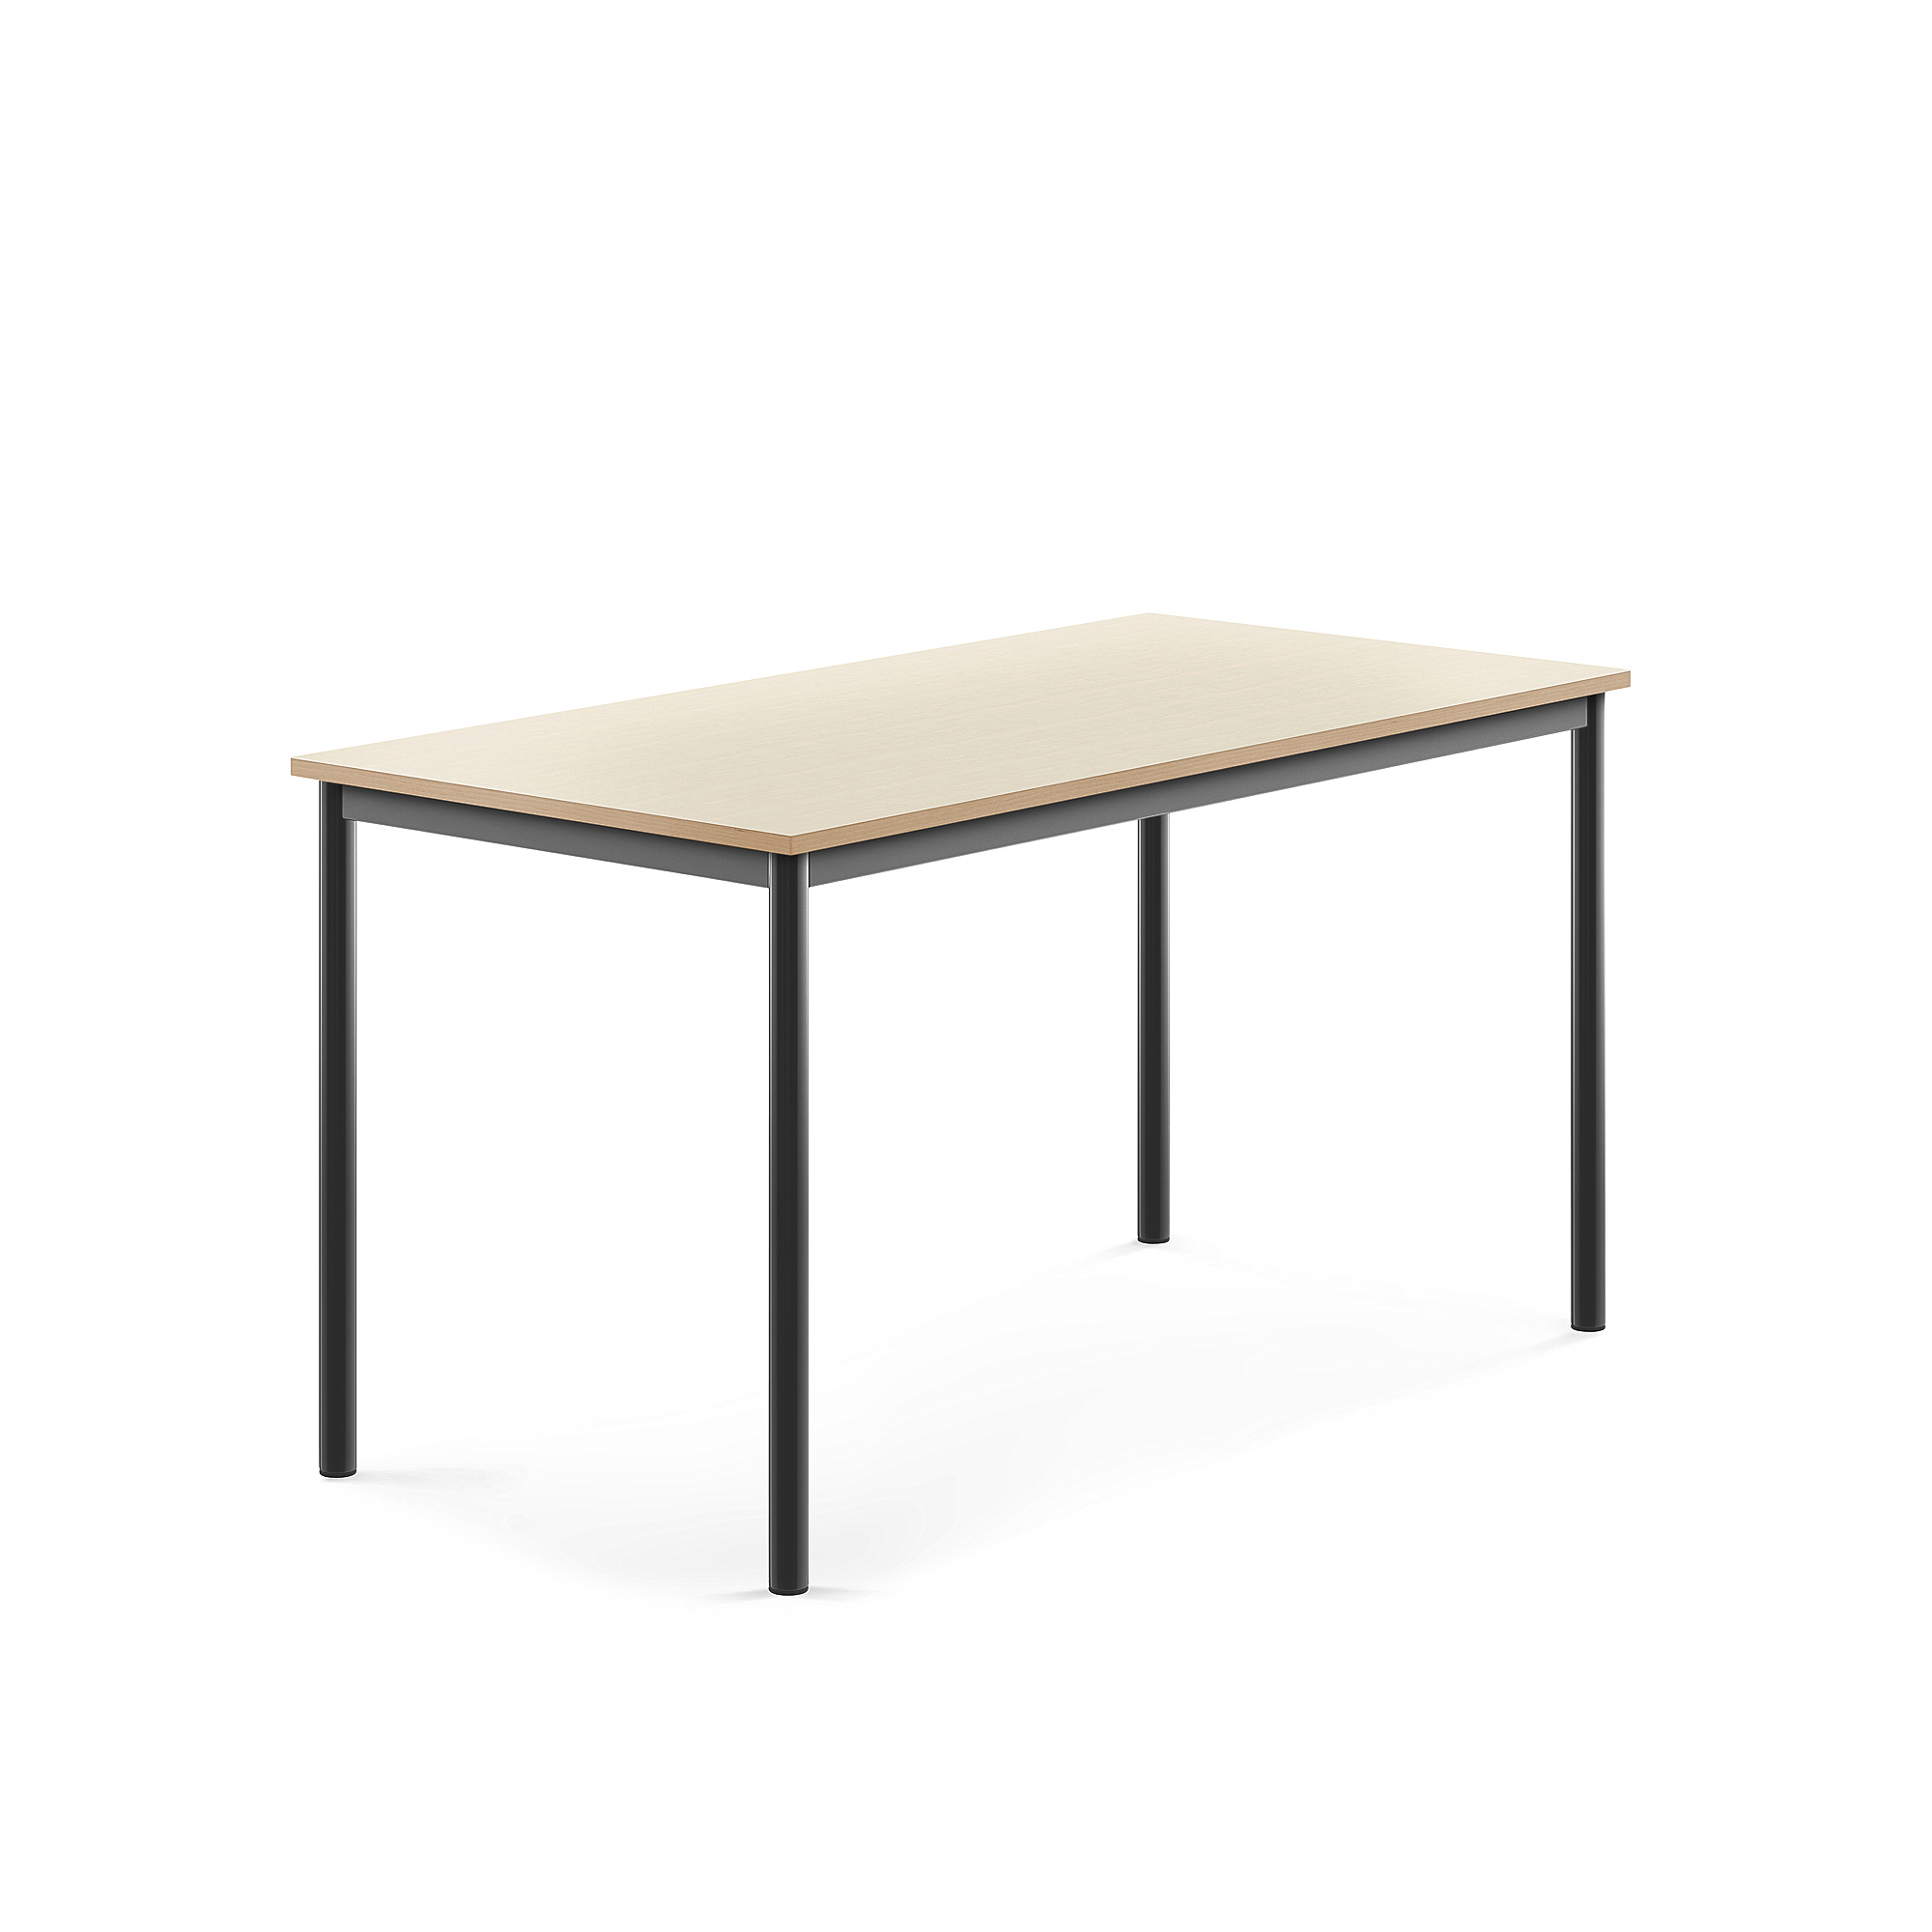 Stůl SONITUS, 1400x700x720 mm, antracitově šedé nohy, HPL deska tlumící hluk, bříza